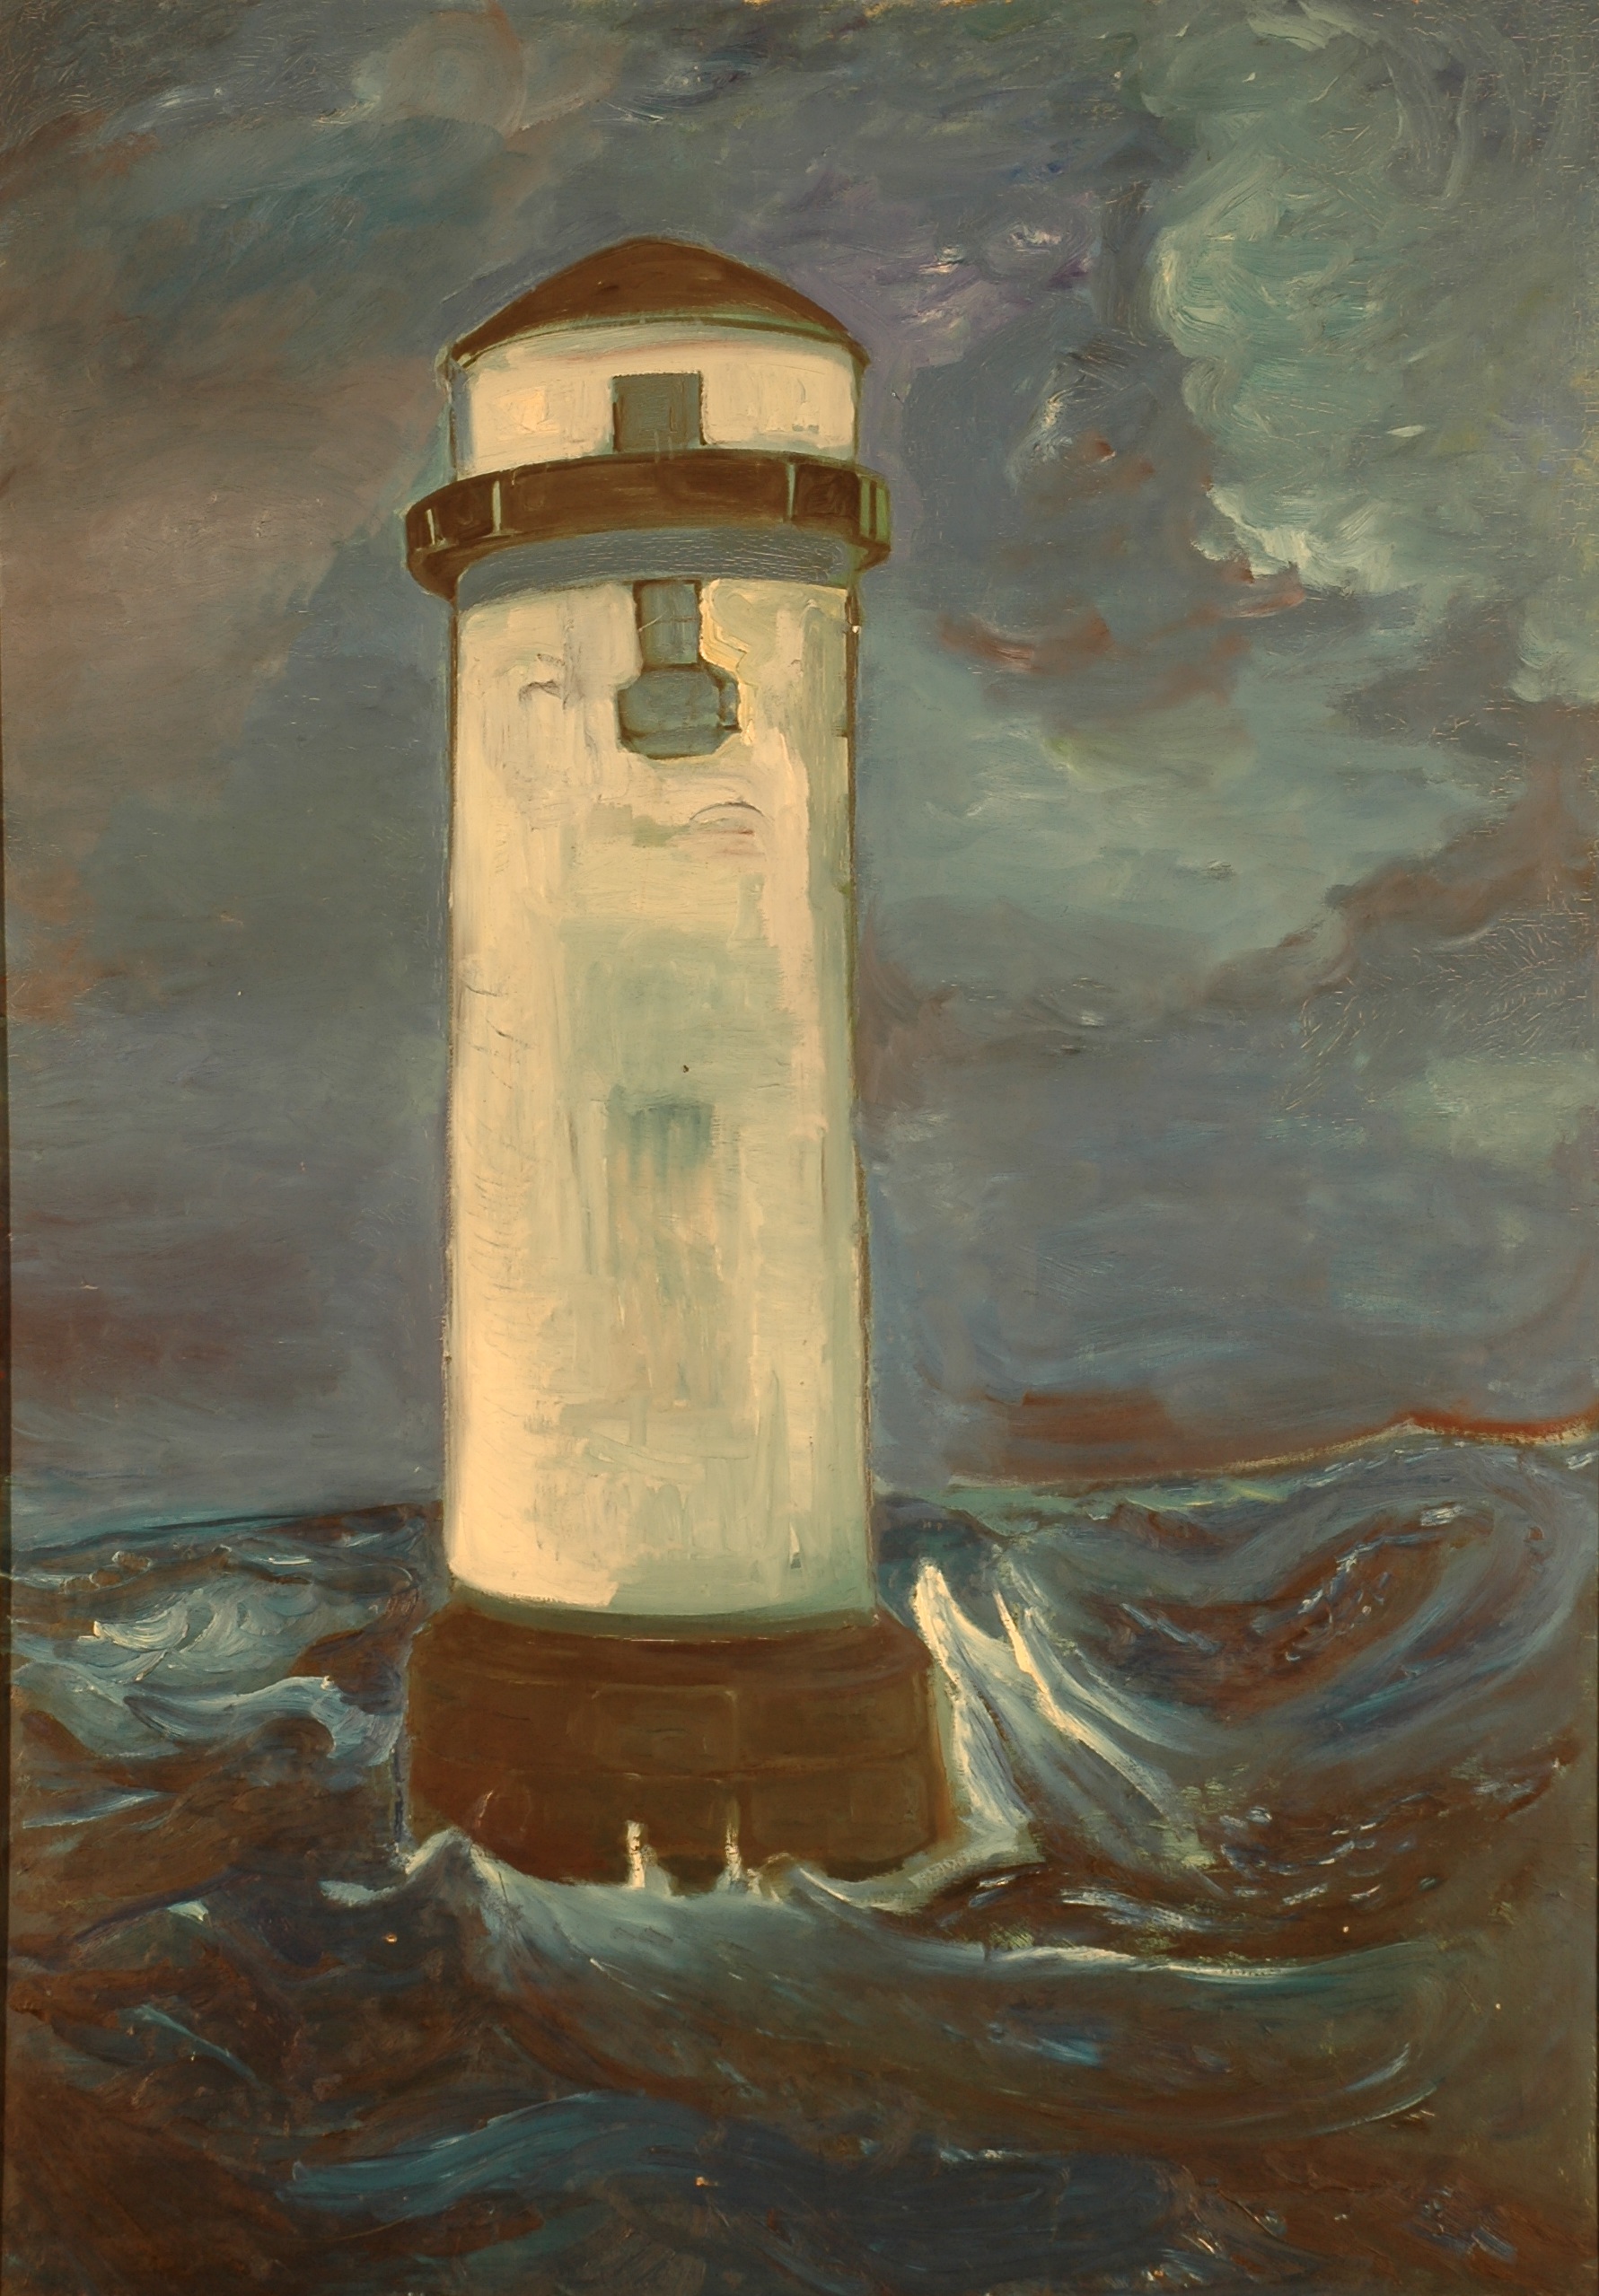 "La Sirène de brume", huile sur toile, 200 x 130 cm, 1957.